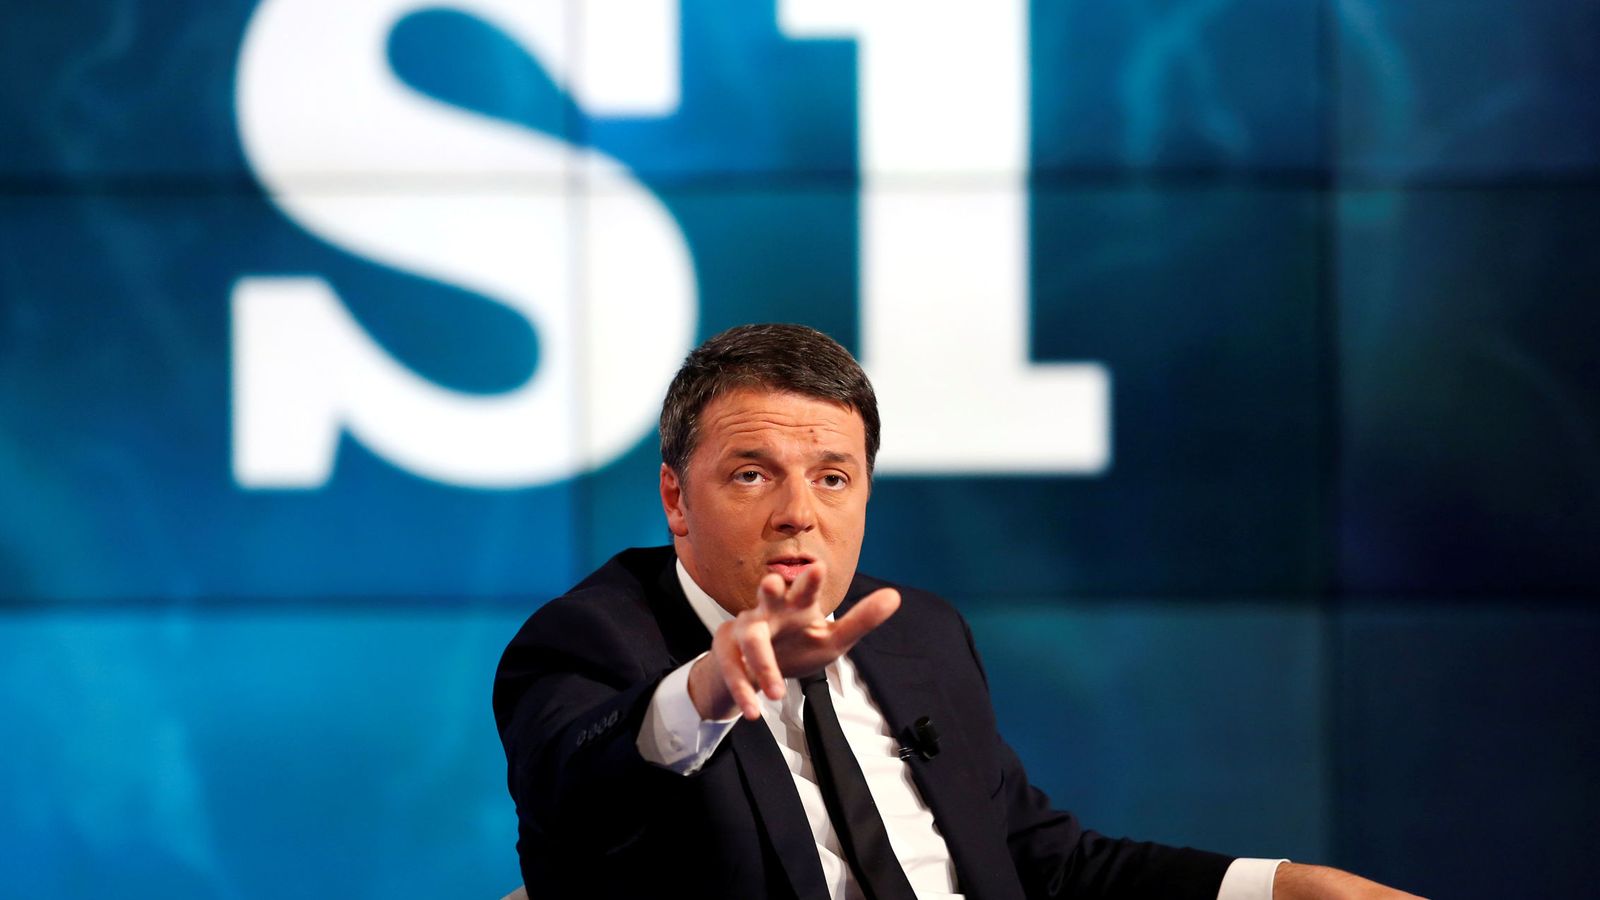 Foto: Matteo Renzi gesticula durante su intervención en el programa "Porta a Porta", el 30 de noviembre de 2016 (Reuters).